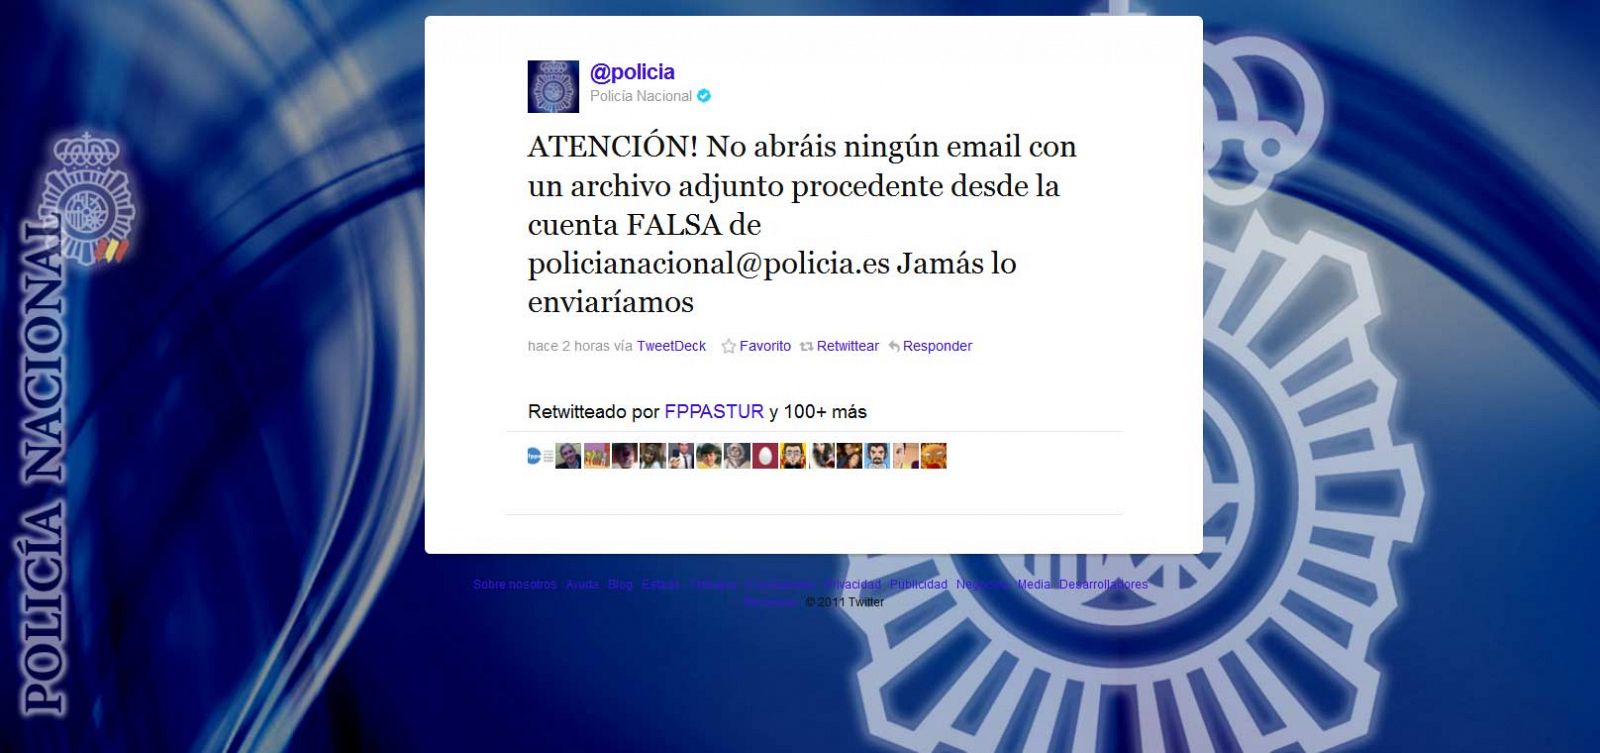 La policía ha advertido de la existencia del virus a través de Twitter